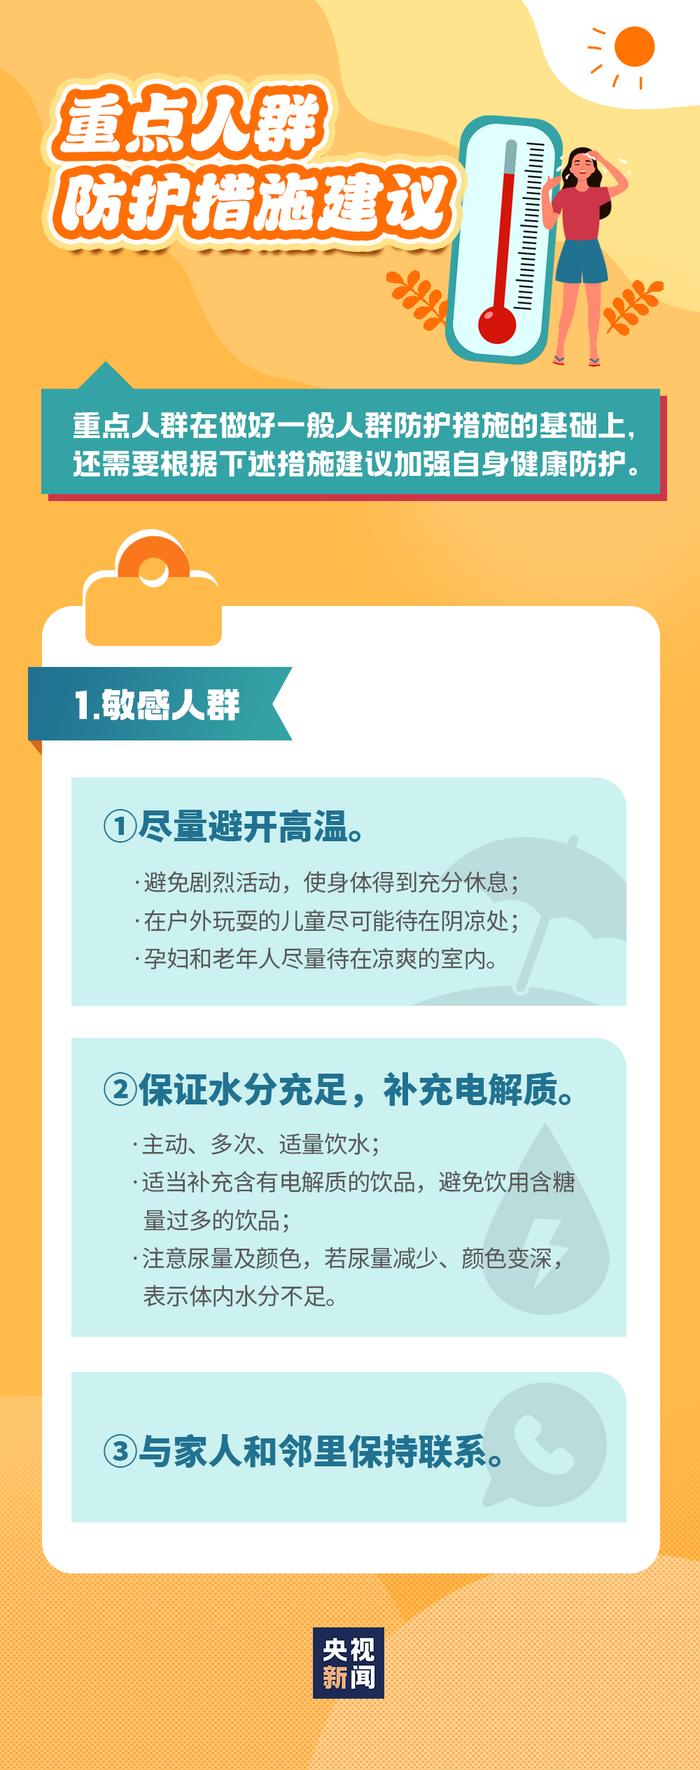 知晓｜25~40℃，人社部门提示毕业生转档要点！北京：加装车篷、改装座位的电动车拟禁售！高温热浪防护指南来了！